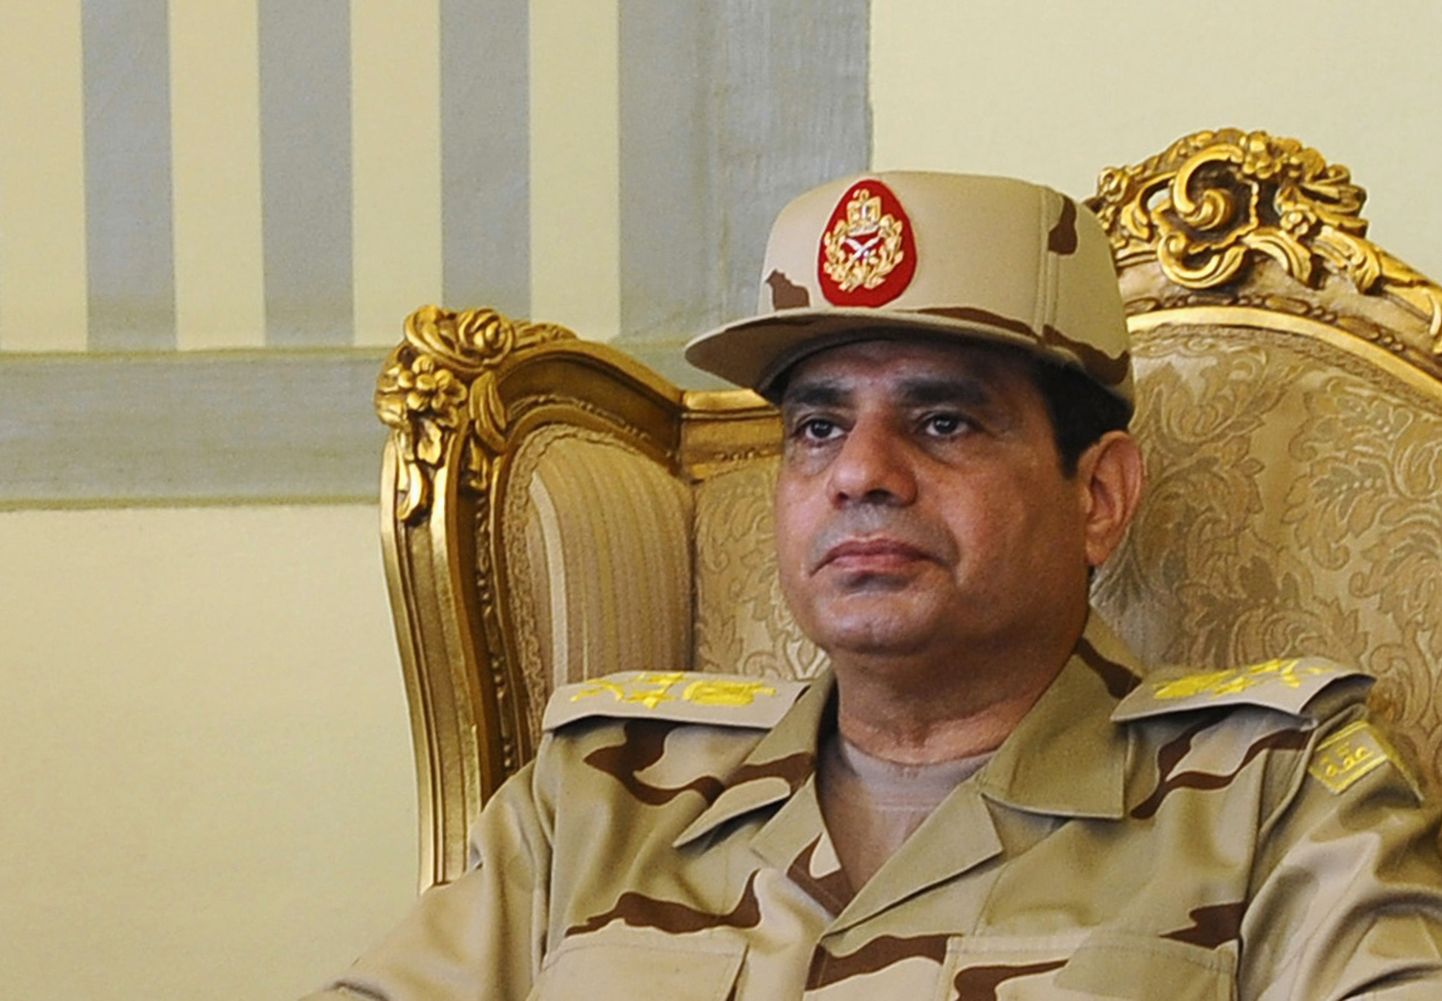 Egiptuse senine armeejuht ja pärast valitsuse tagasiastumist tõenäoline presidendikandidaat Abdel Fattah al-Sisi.